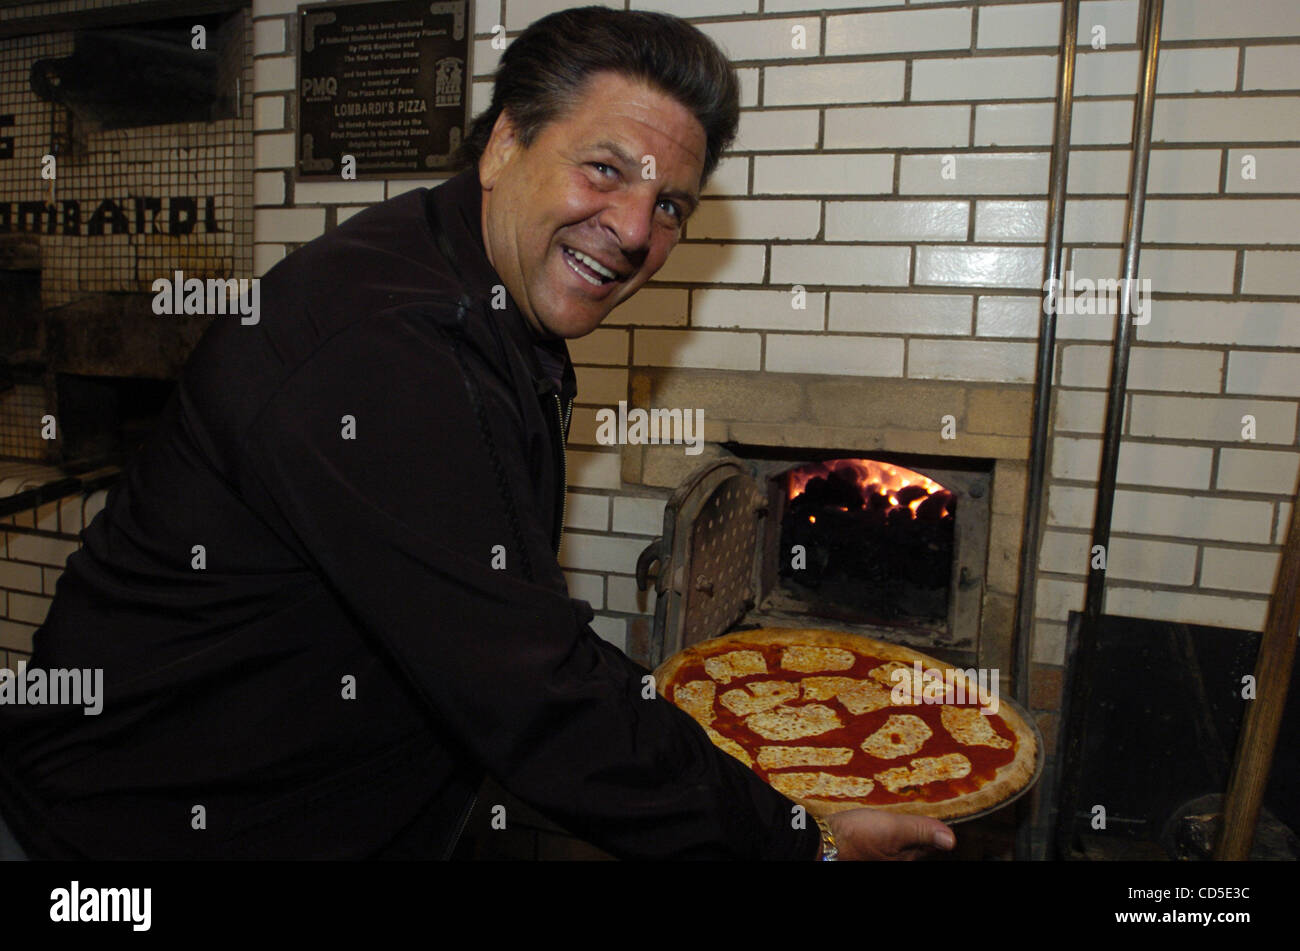 John Brescio, Besitzer des Lombardi es mit einer Pizza aus dem Ofen. Scott  Wiener, 26, von Hoboken, NJ startete Scotts Pizza Touren mit dem Bus, wo  Menschen New Yorks besten Pizzerien getroffen